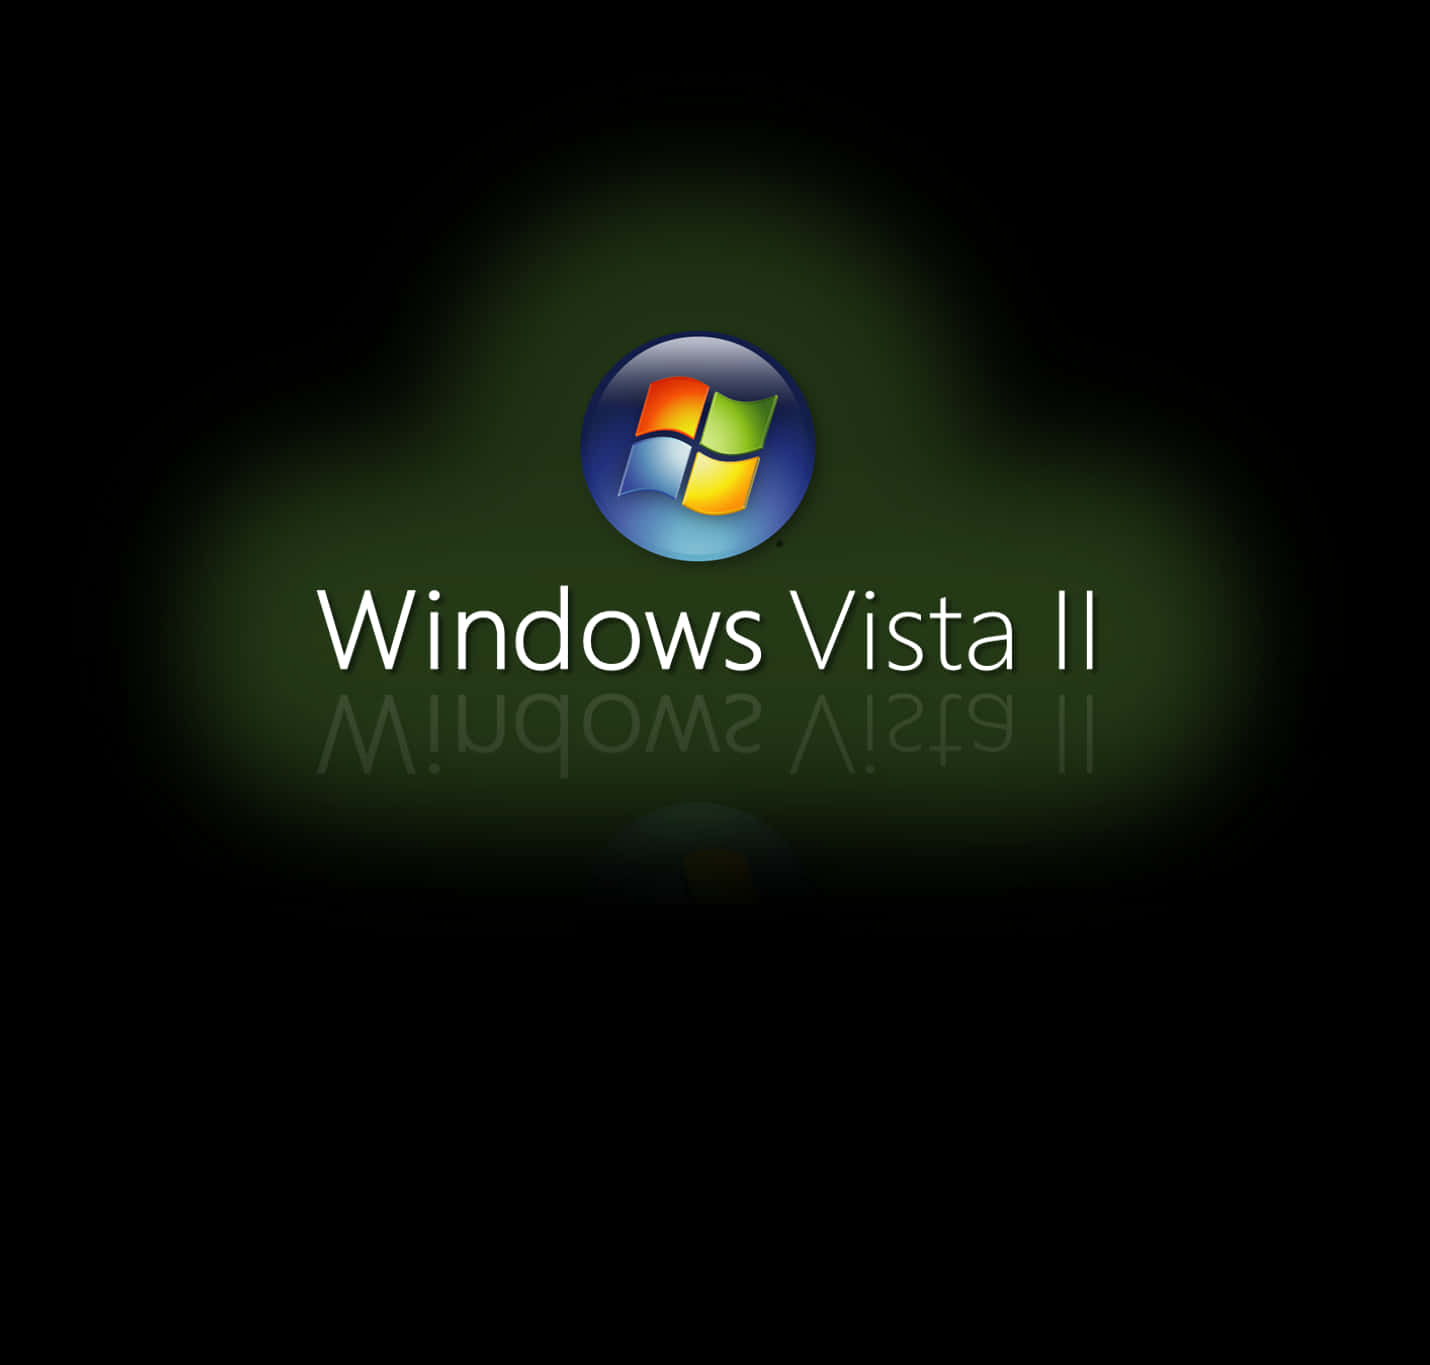 Bildervon Windows Vista